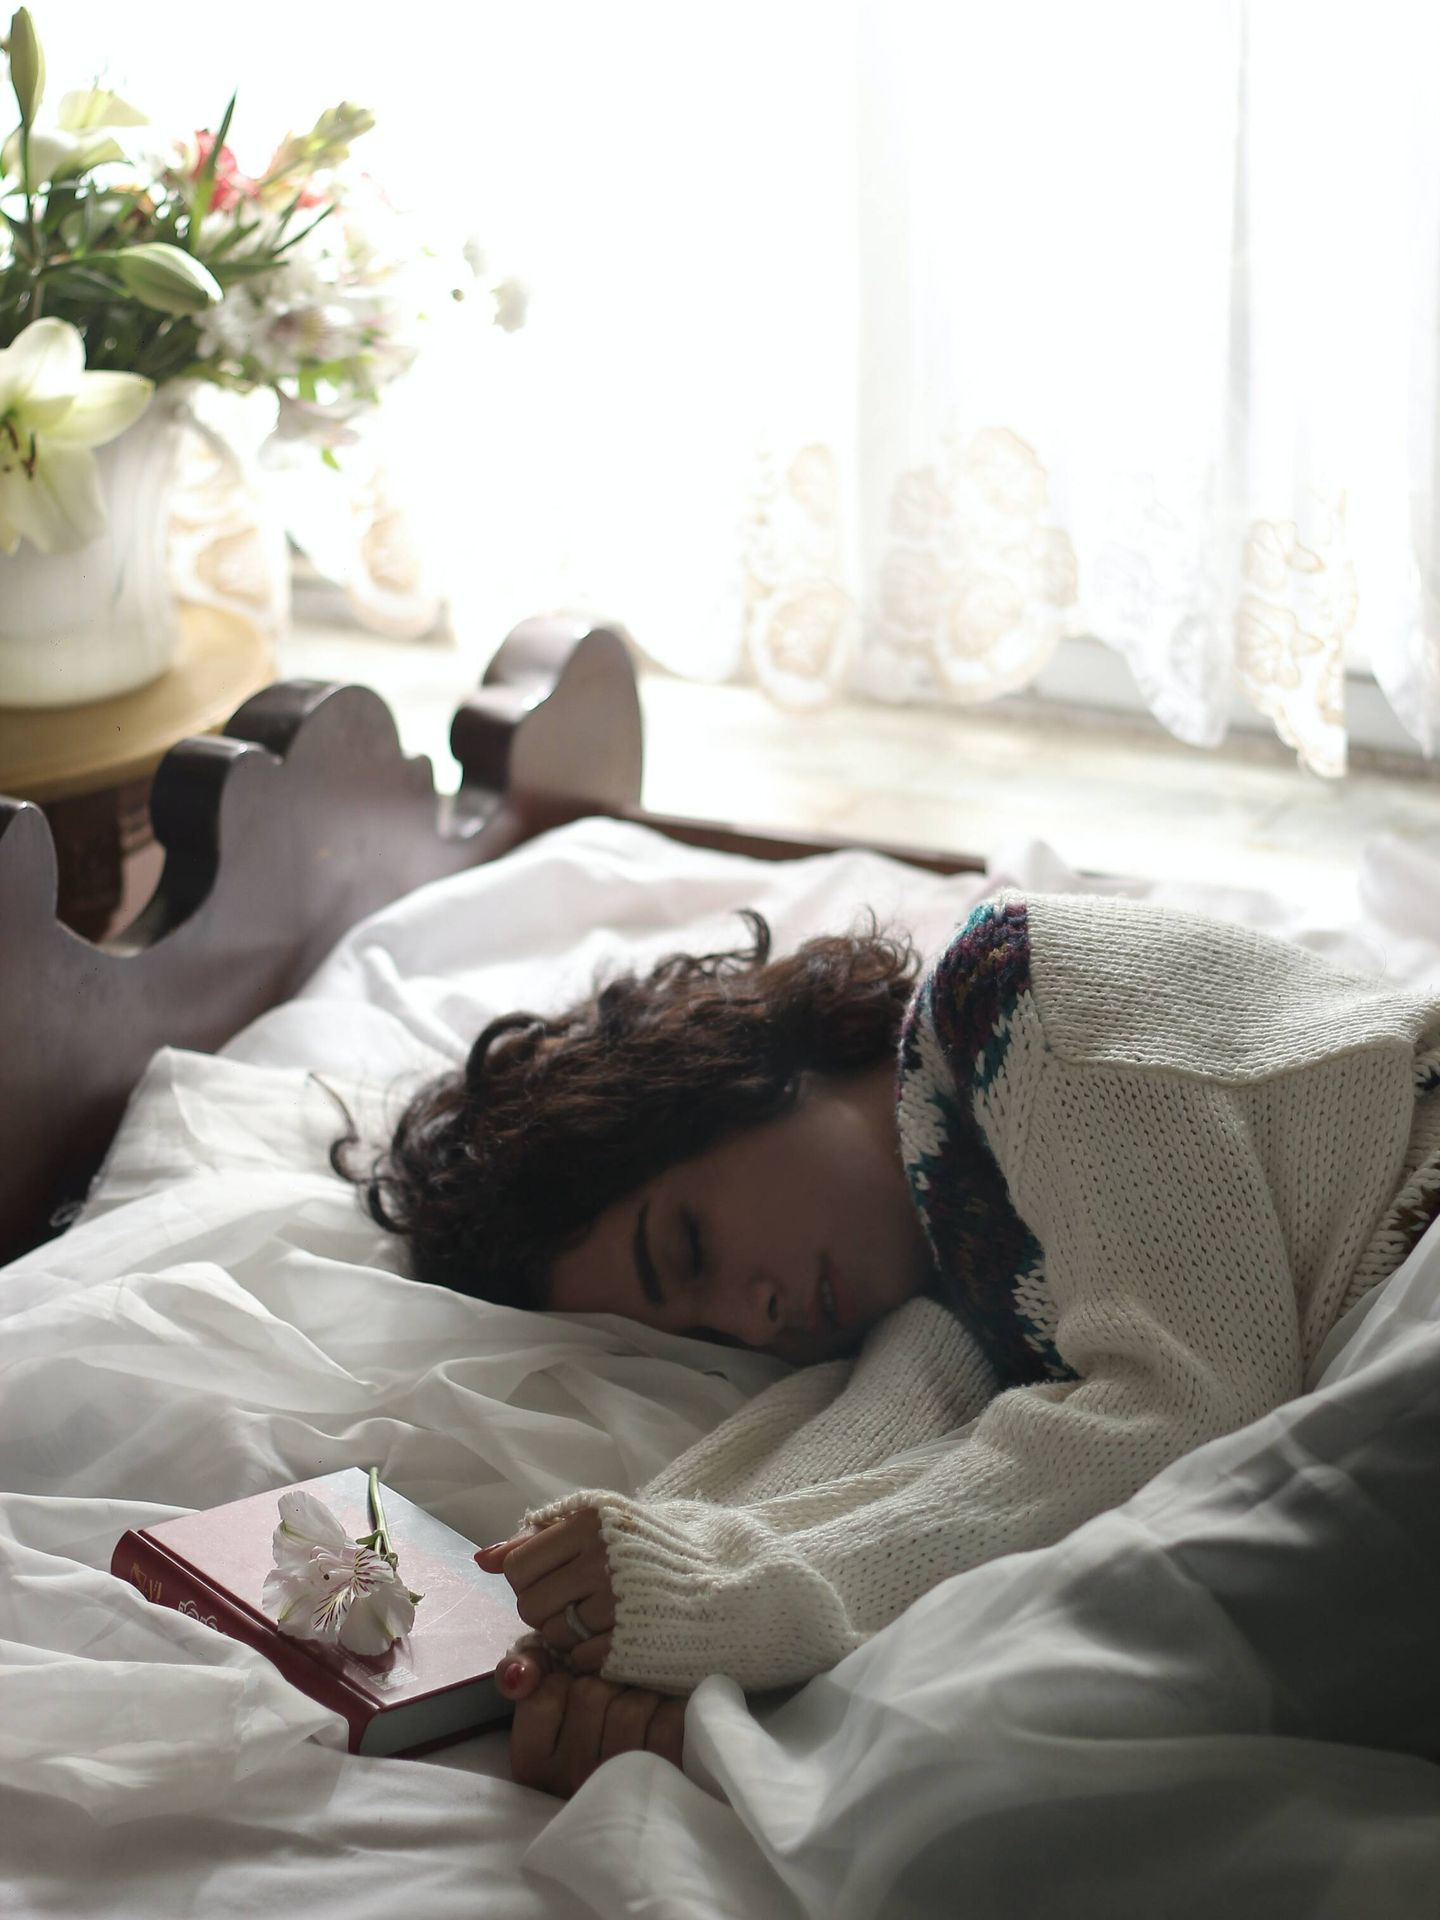 La postura que eliges para dormir es determinante. (Zohre Nemati para Unsplash)